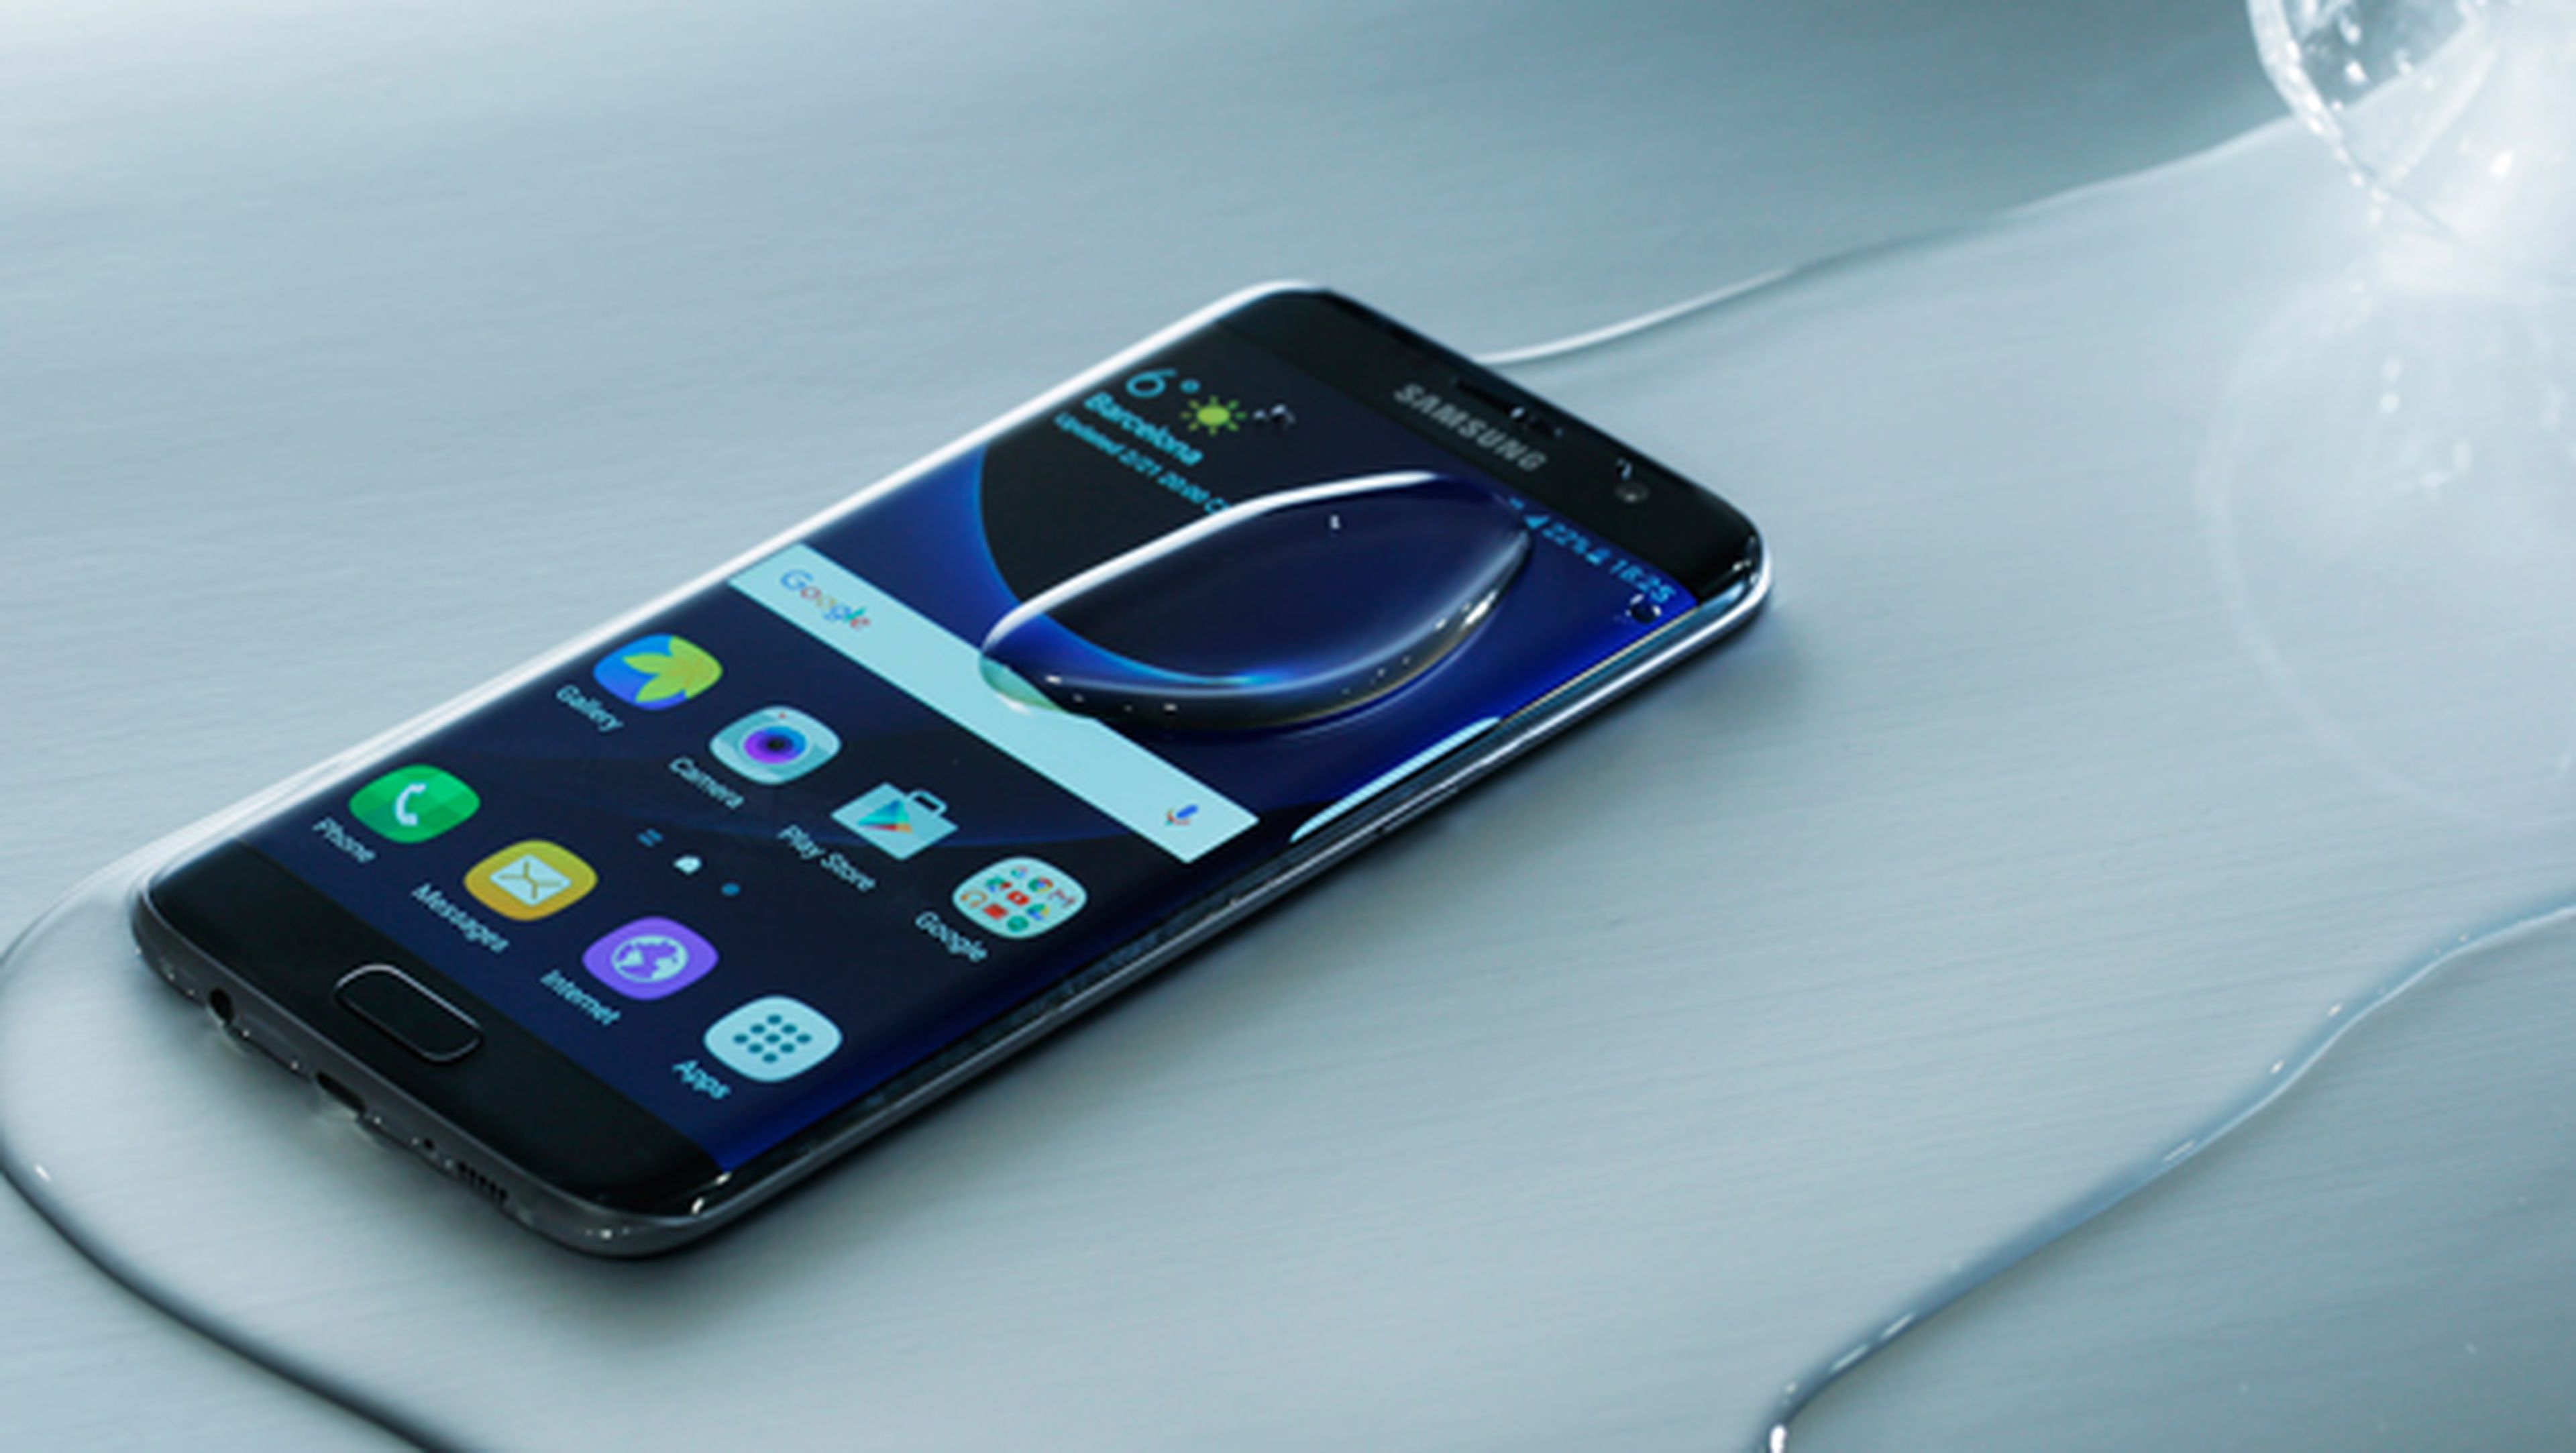 Galaxy S7 oferta, Galaxy S7 black Friday, ofertas Galaxy S7, Galaxy S7 descuento